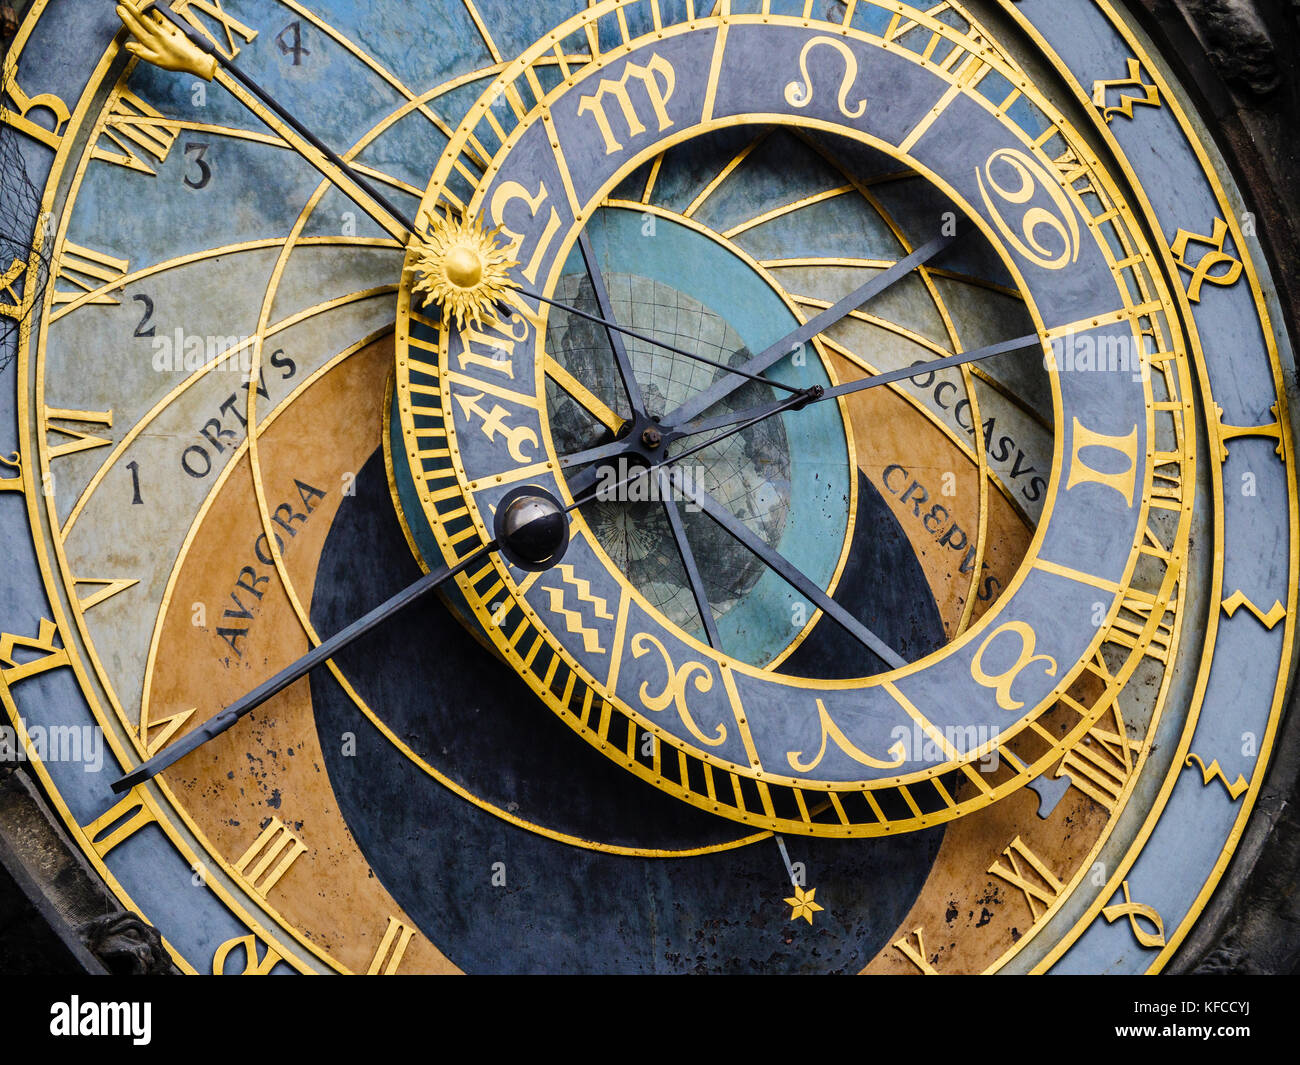 La partie astrologique de l'horloge astronomique Banque D'Images